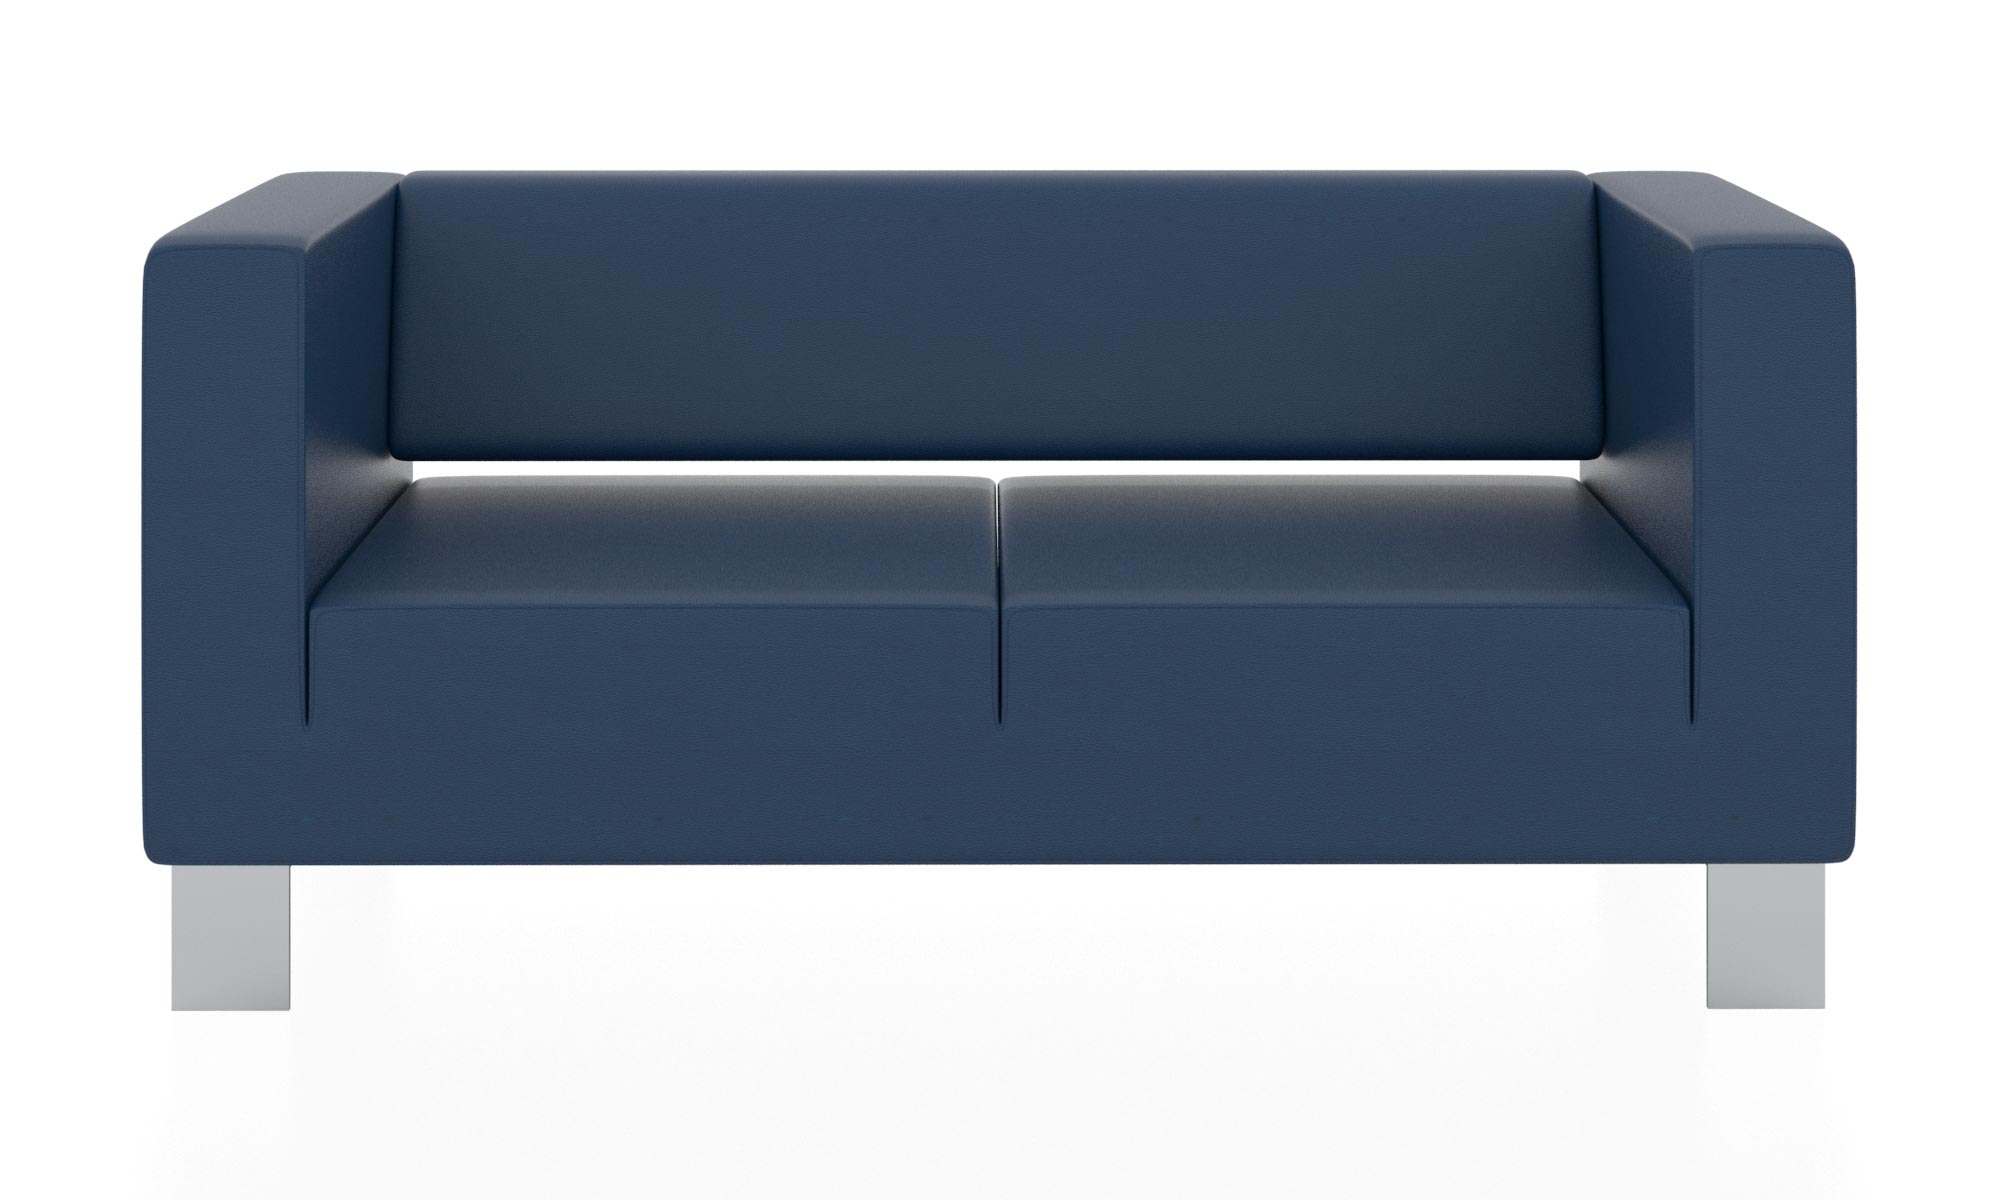 Современный двухместный диван с обивкой из кожзама. Цвет синий(euroline 903).